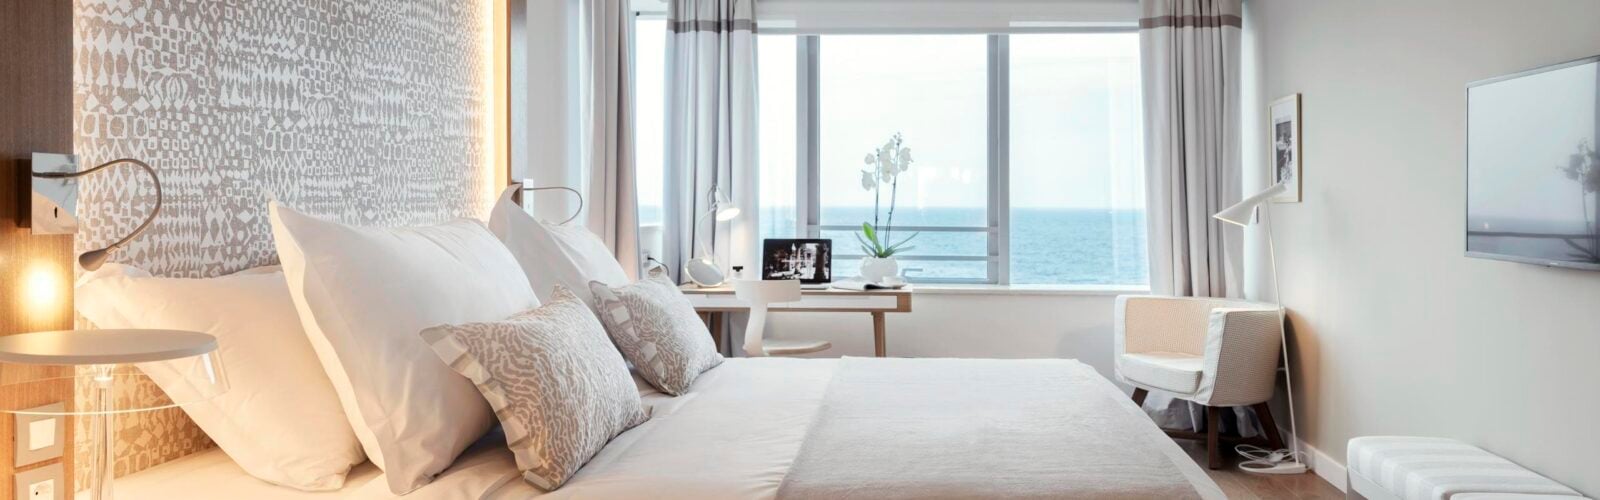 Bedroom overlooking the ocean in Croatia Hotel Bellevue Dubrovnik